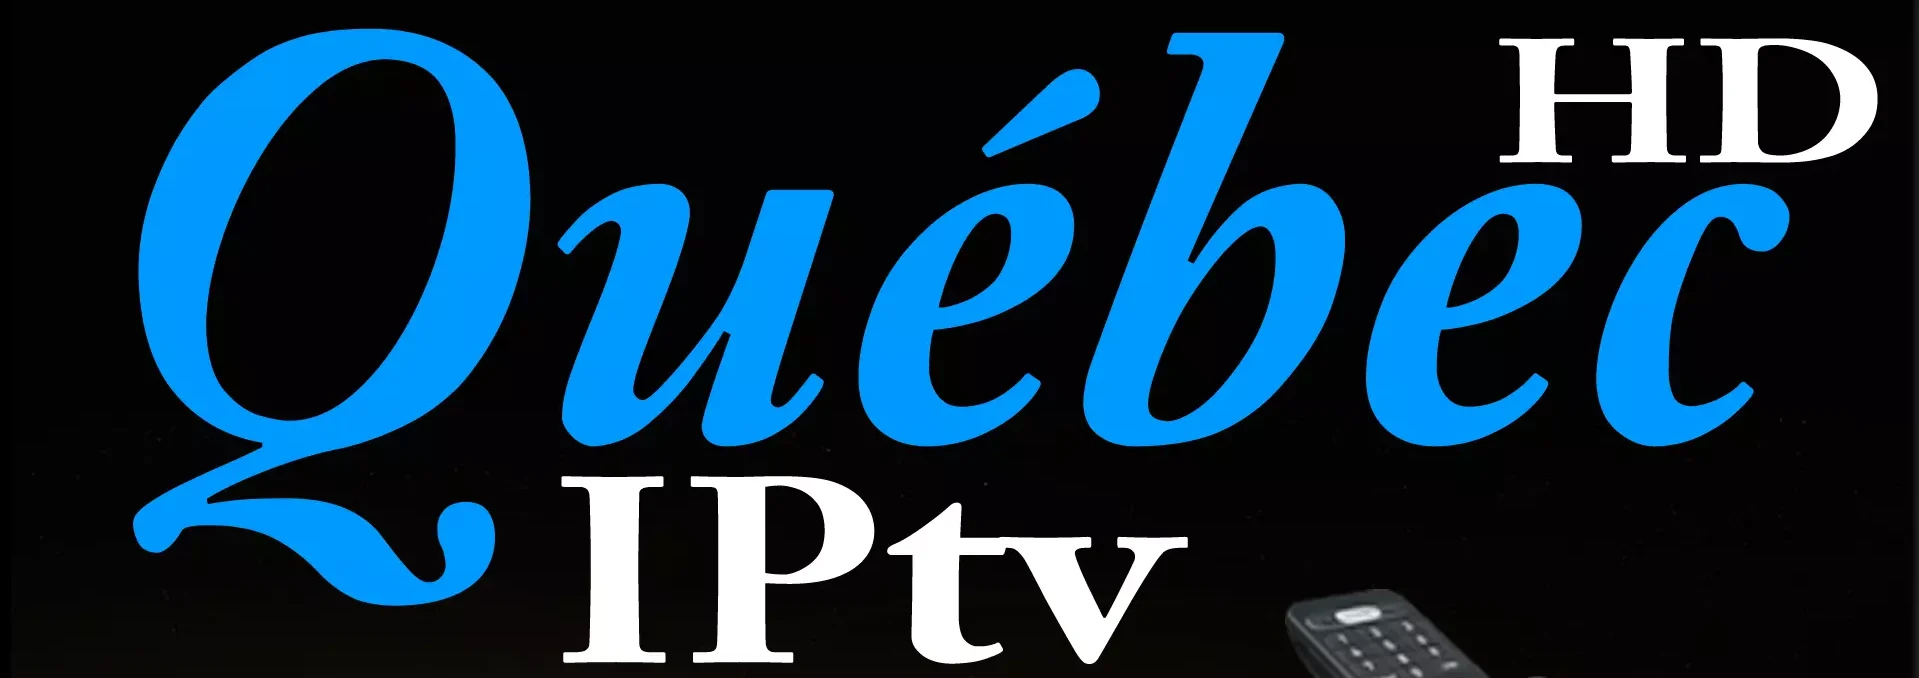 QUEBEC IPTV